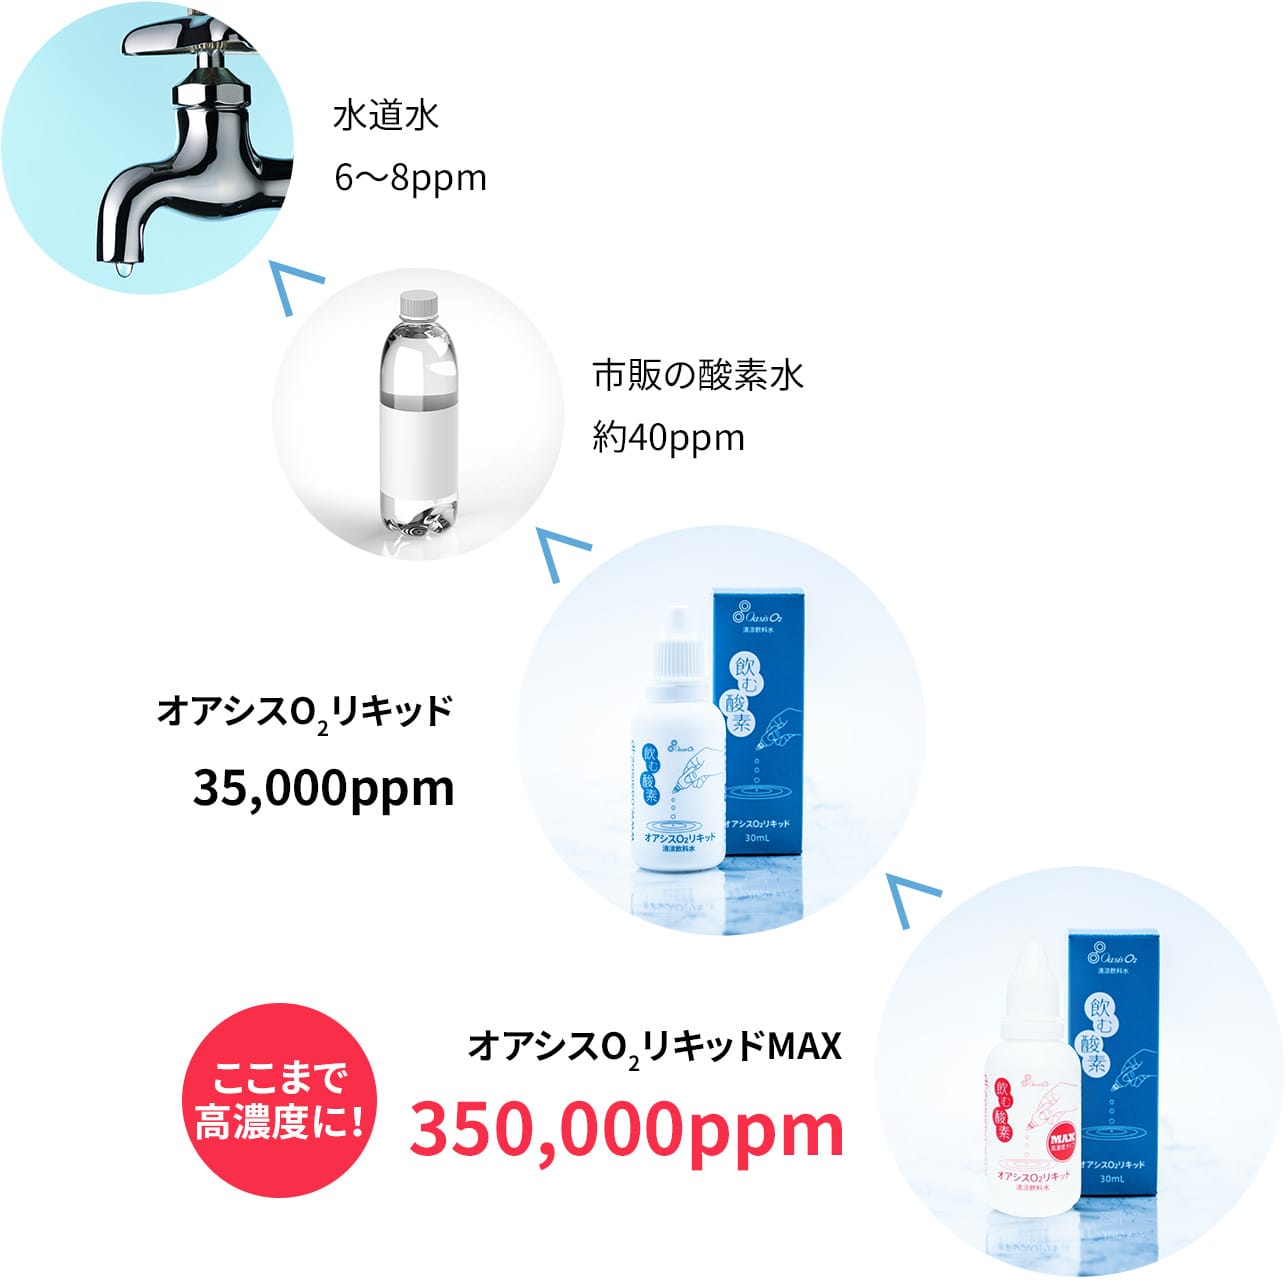 水道水（6～8ppm）＜市販の酸素水（約40ppm）＜オアシスO2リキッド（35,000ppm）＜オアシスO2リキッドMAX（350,000ppm）ここまで高濃度に！